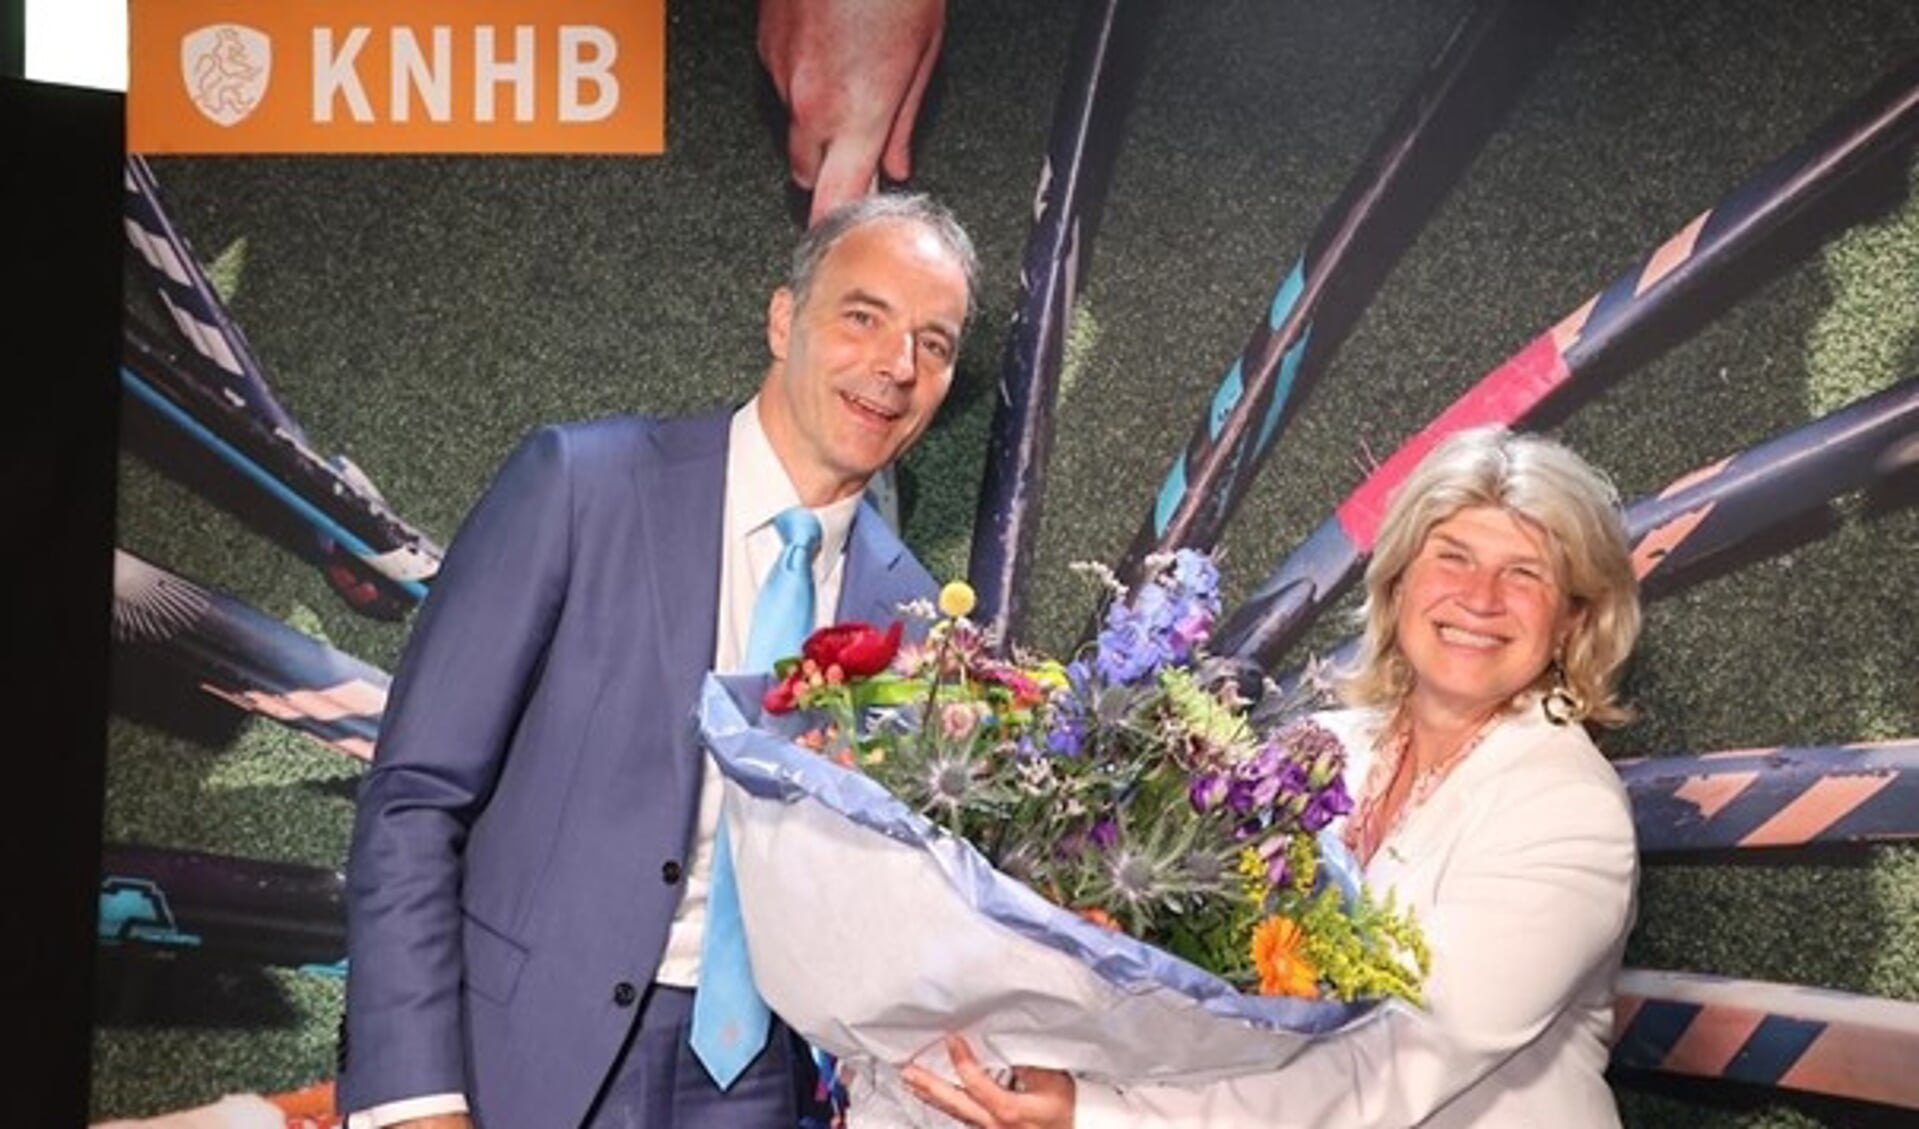 Voorzitter Erik Cornelissen overhandigt Madeleine Bakker een prachtige bos bloemen nadat zij benoemd is tot erelid van de KNHB.